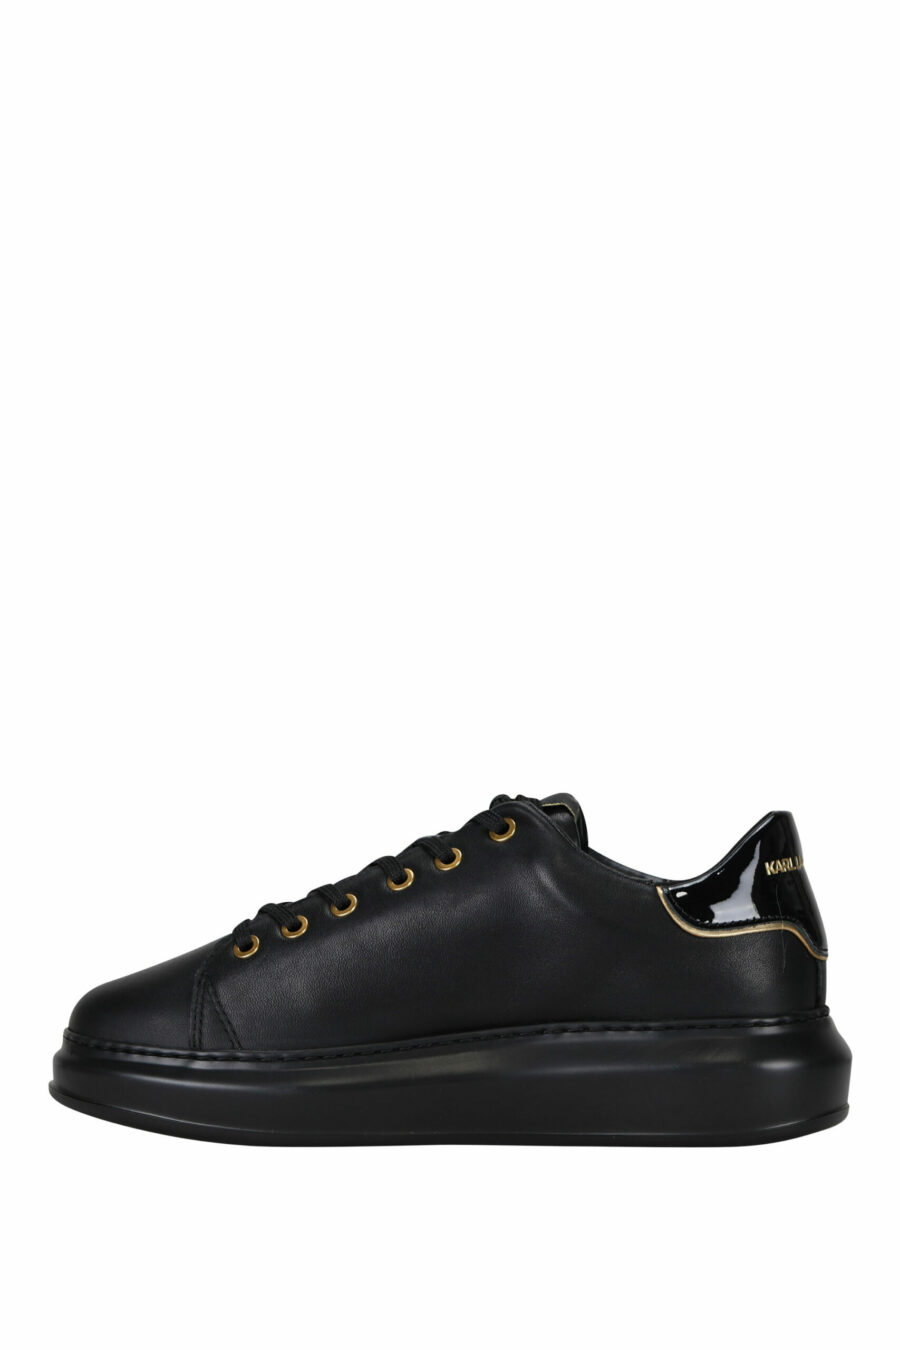 Zapatillas negras con logo "rue st guillaume" dorado en metal - 5059529362699 2 scaled